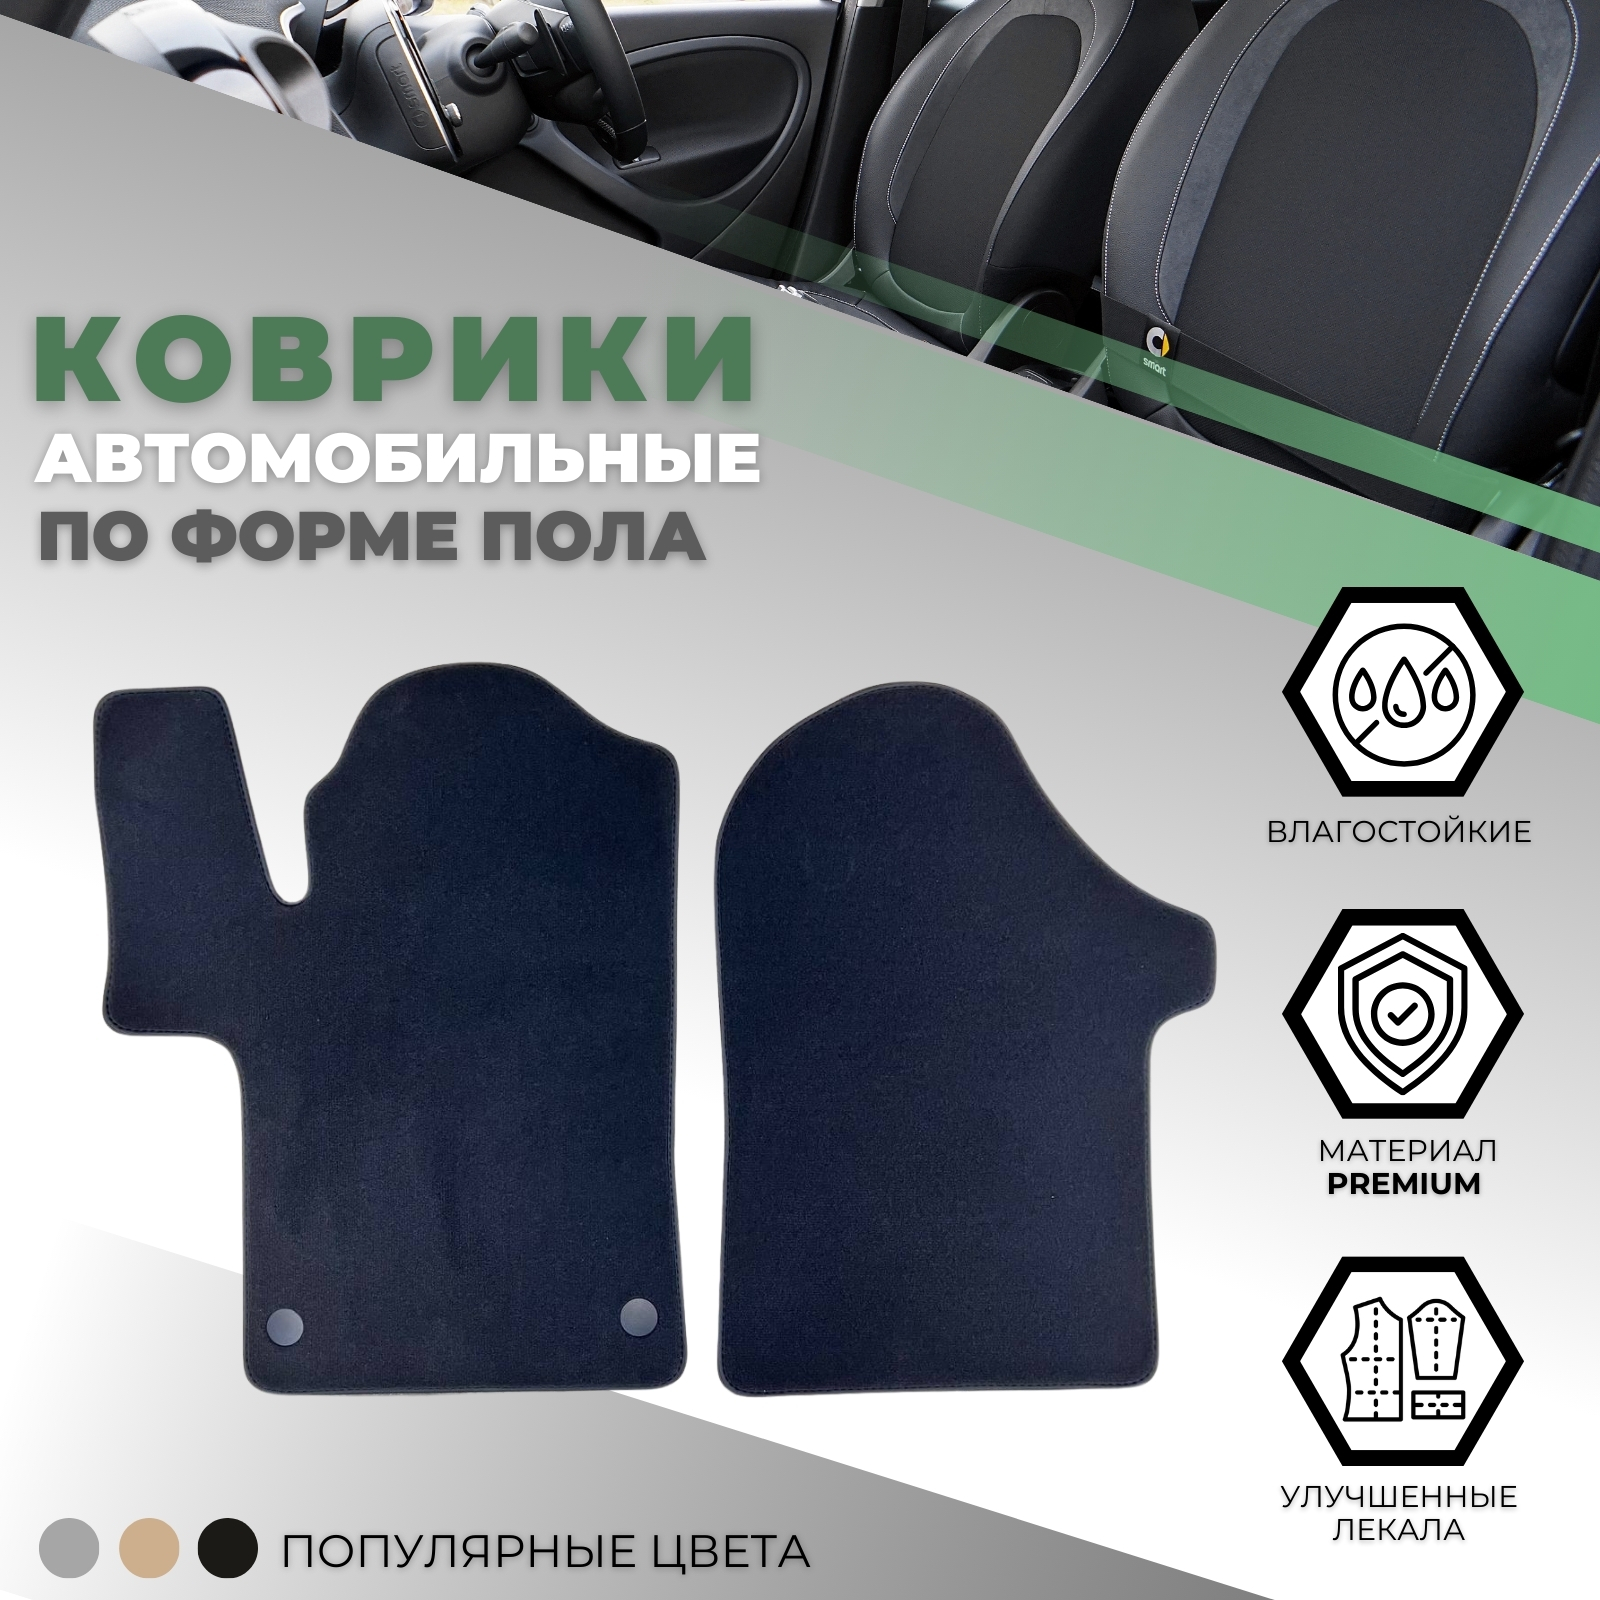 Коврики в салон Mercedes-Benz V-Класс II (W447) 2014-, текстильные Alikosta Premium, Графит, передние Арт. 1529_Pr6mmDGy